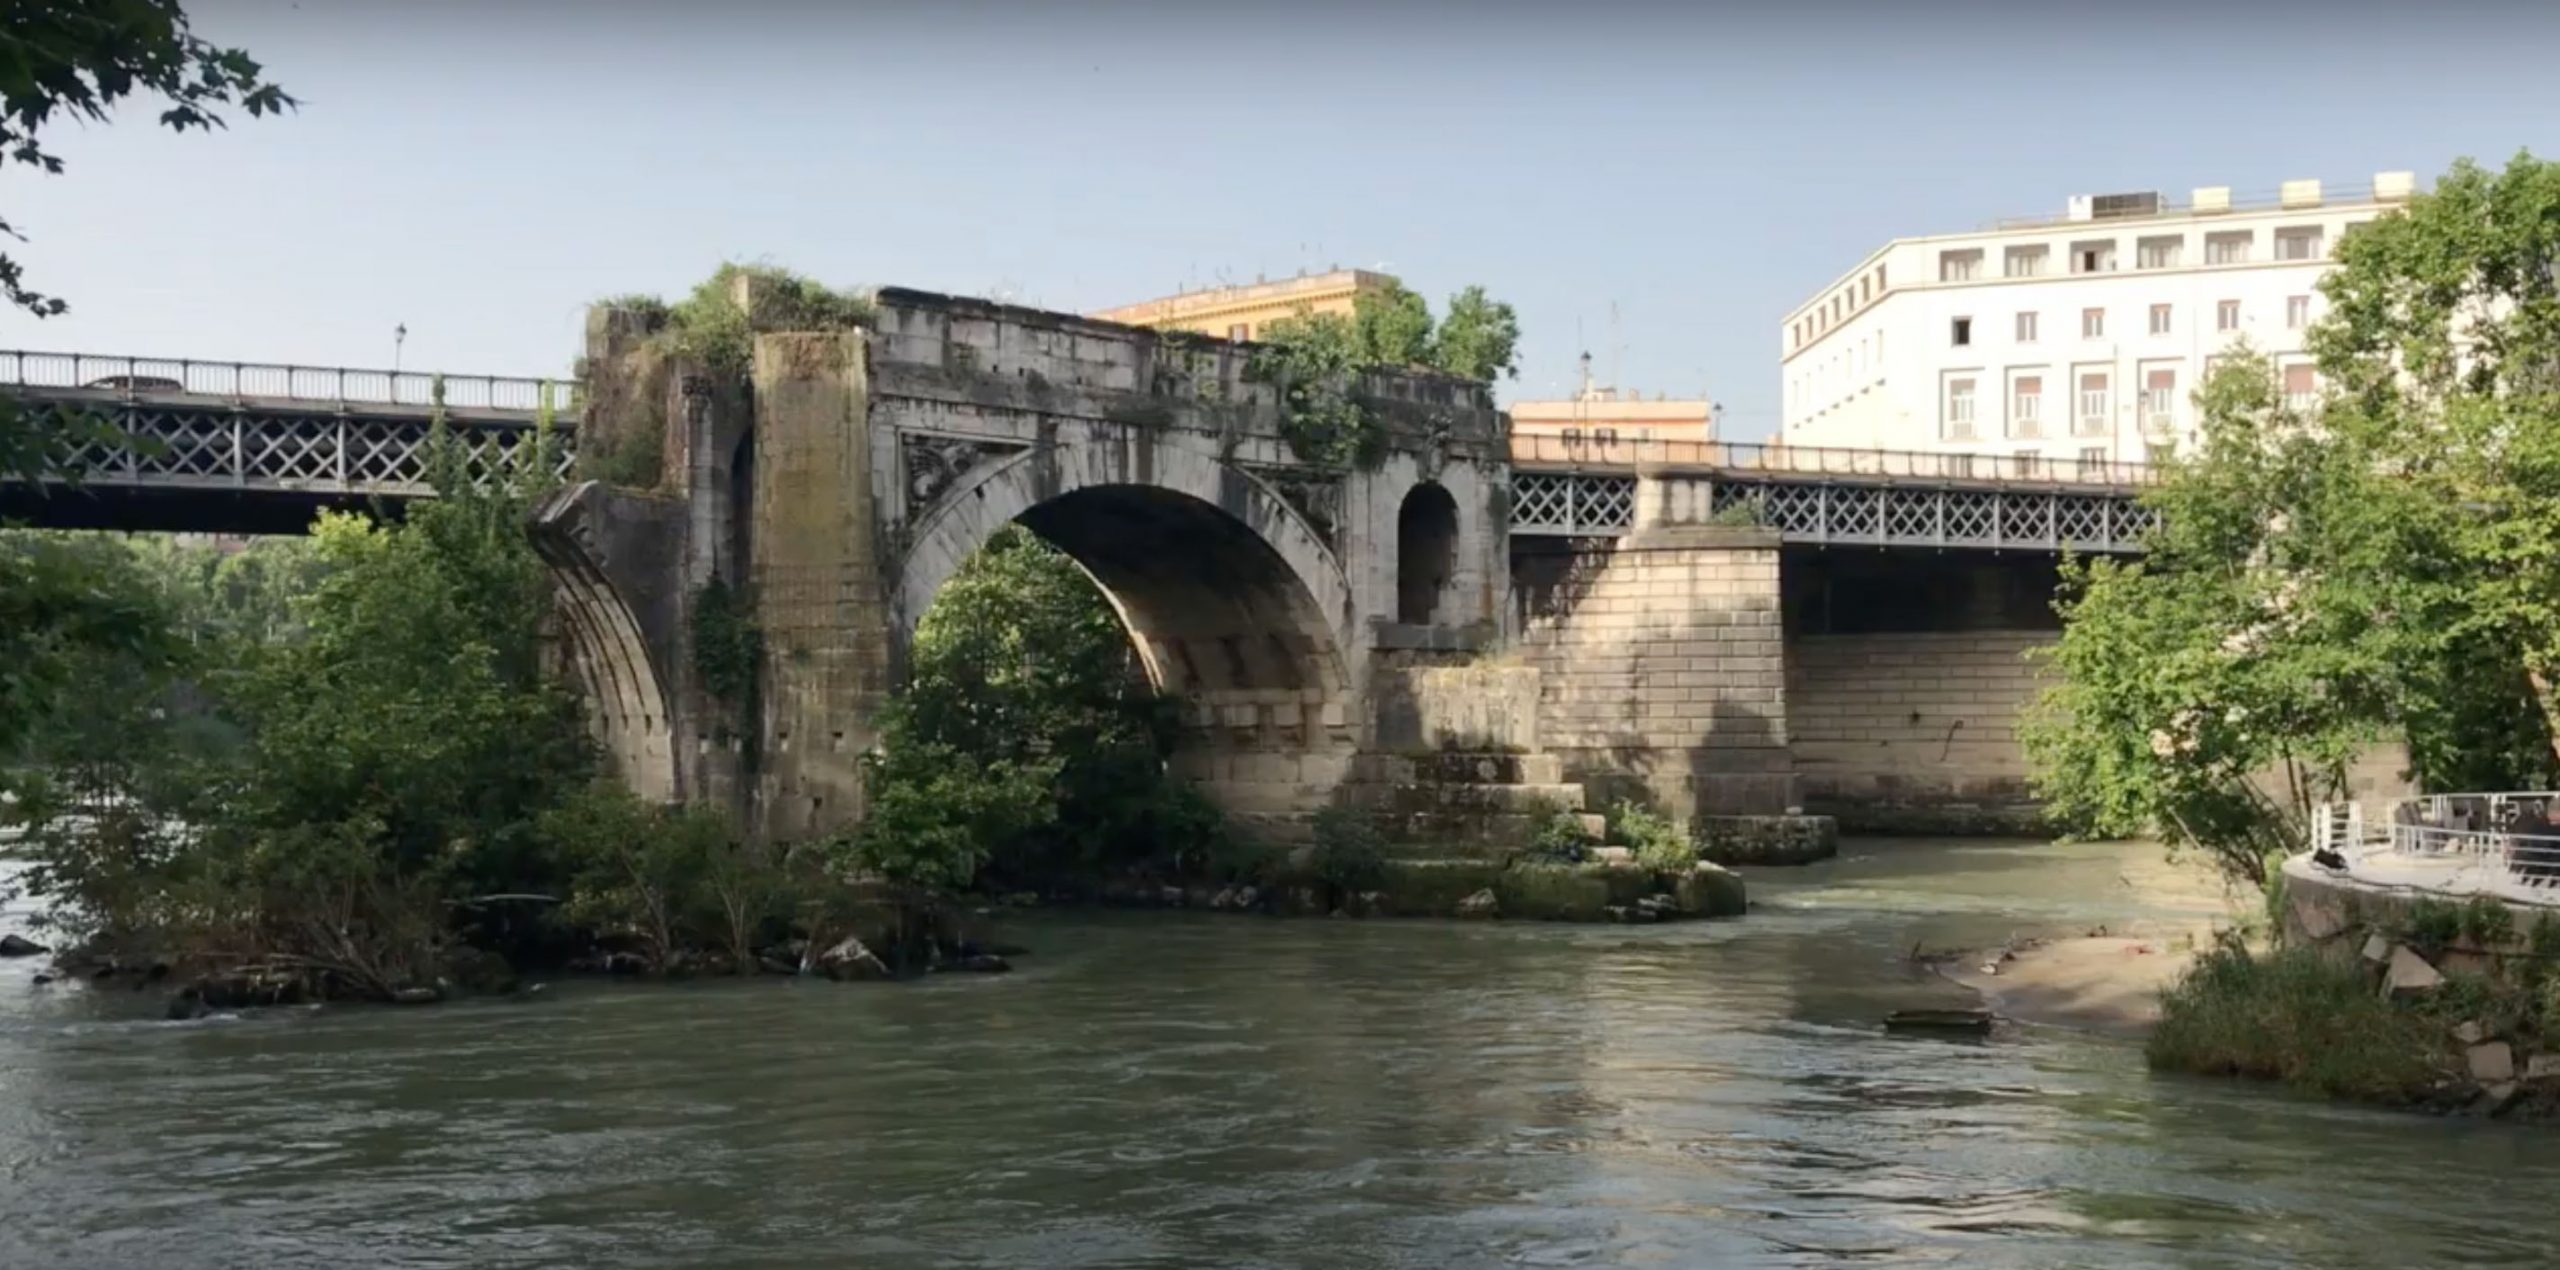 Pons Aemilius (Ponte Rotto)